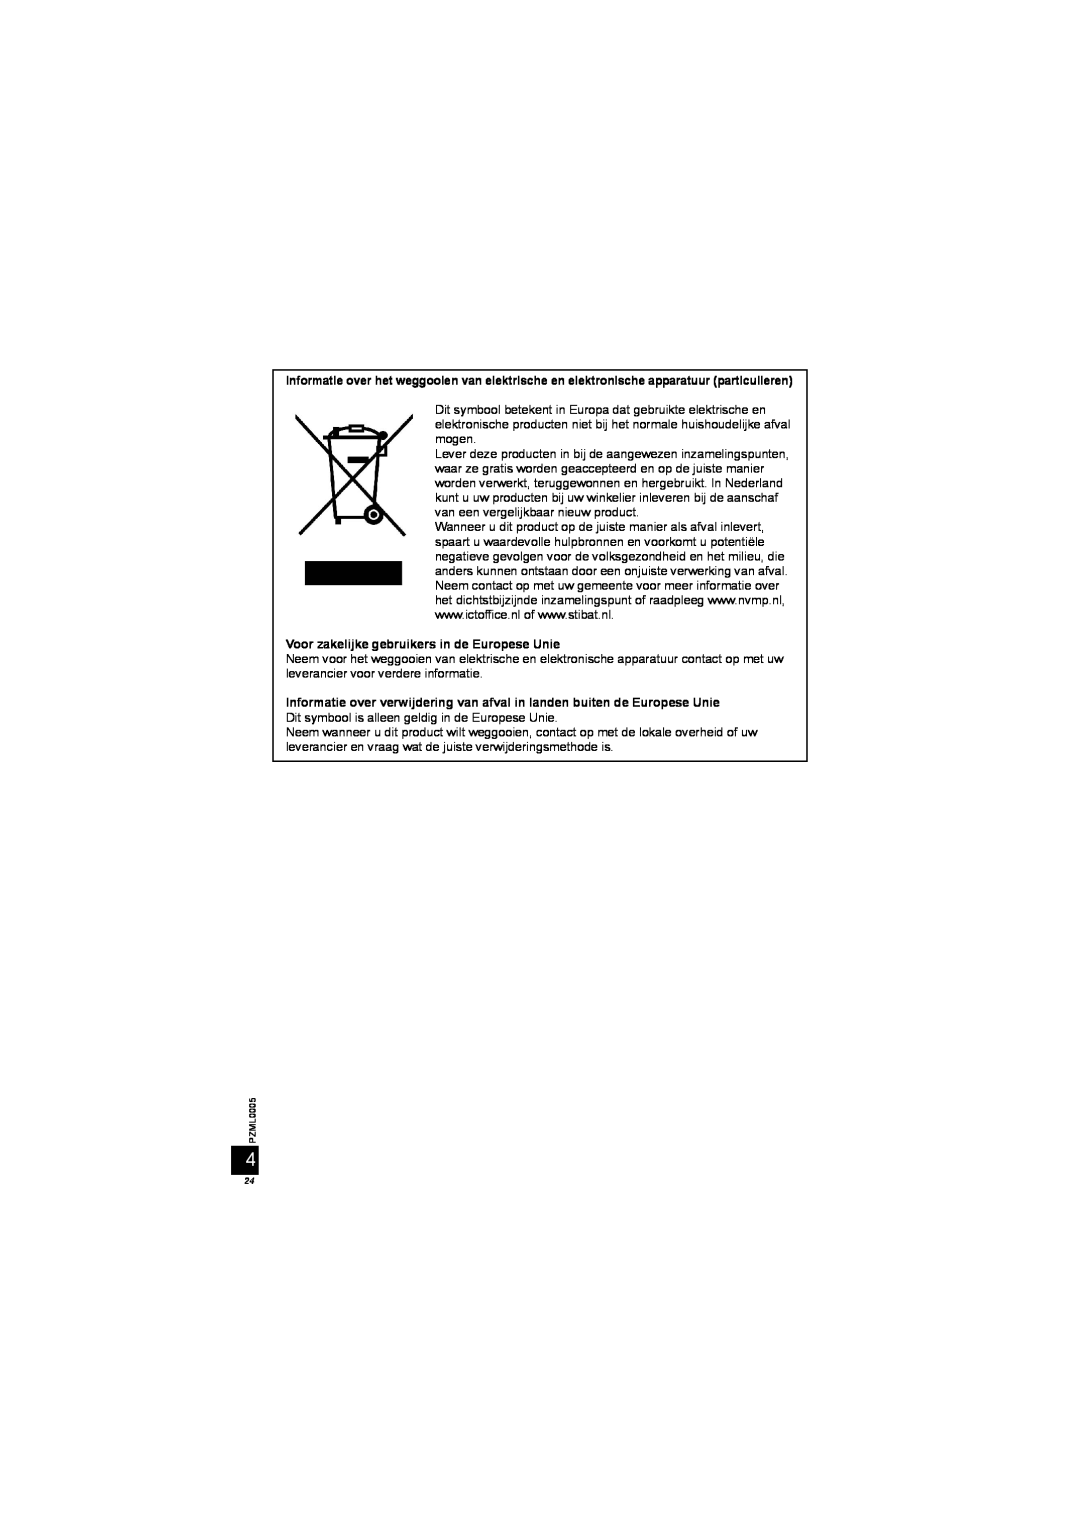 Panasonic DY-WL10 manual Voor zakelijke gebruikers in de Europese Unie 